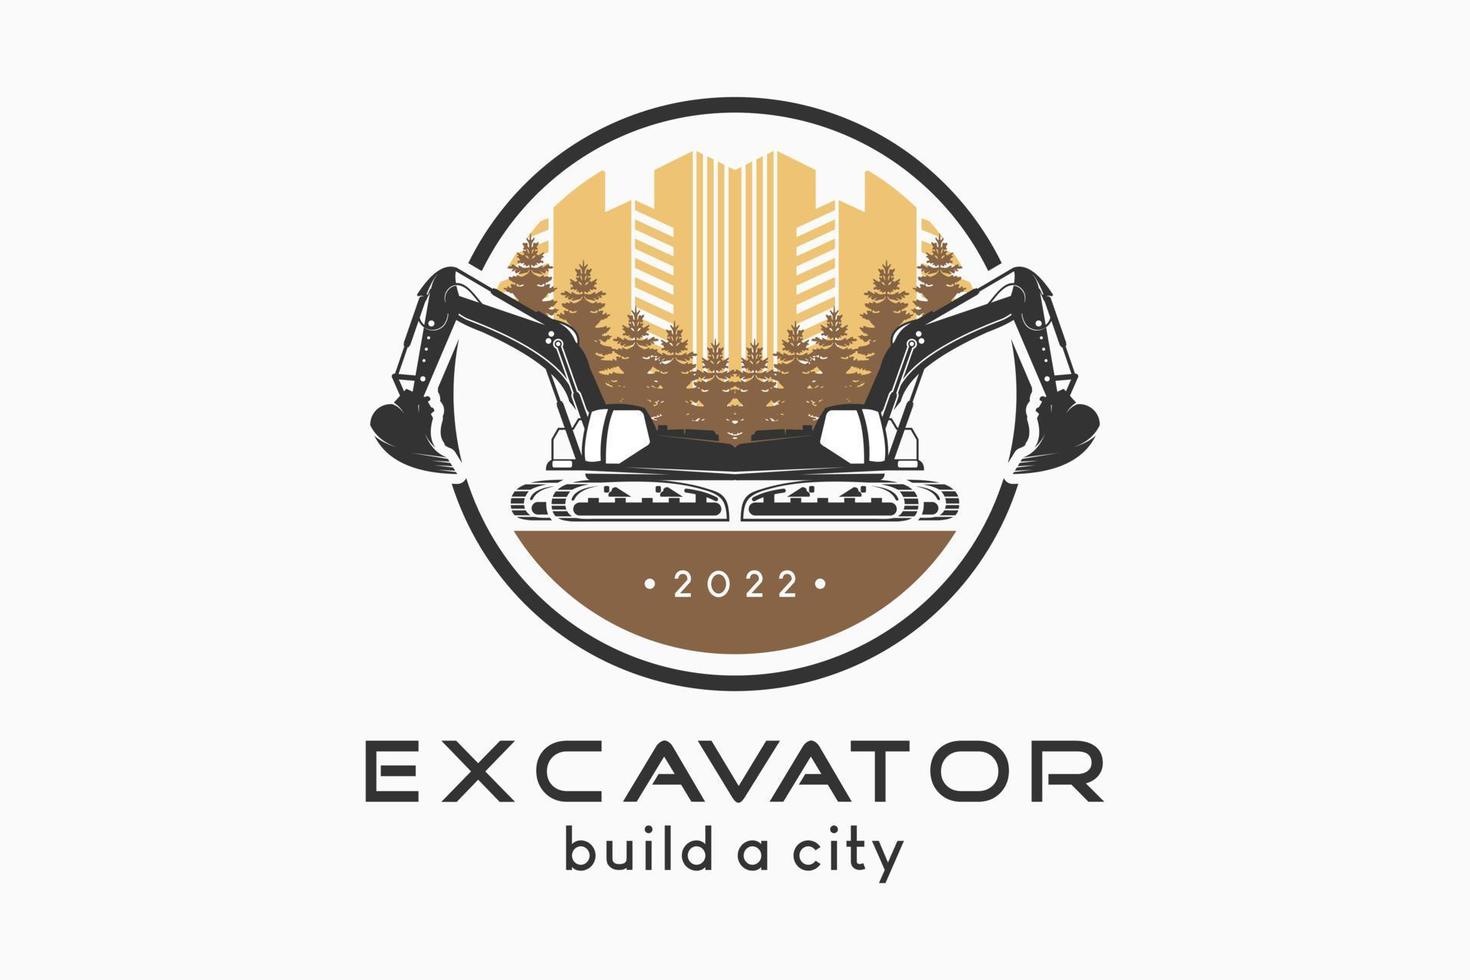 design del logo dell'escavatore con una silhouette di un escavatore combinata con un'icona di un edificio e un cipresso in un cerchio, illustrazione vettoriale di un escavatore che costruisce una città con un concetto creativo.